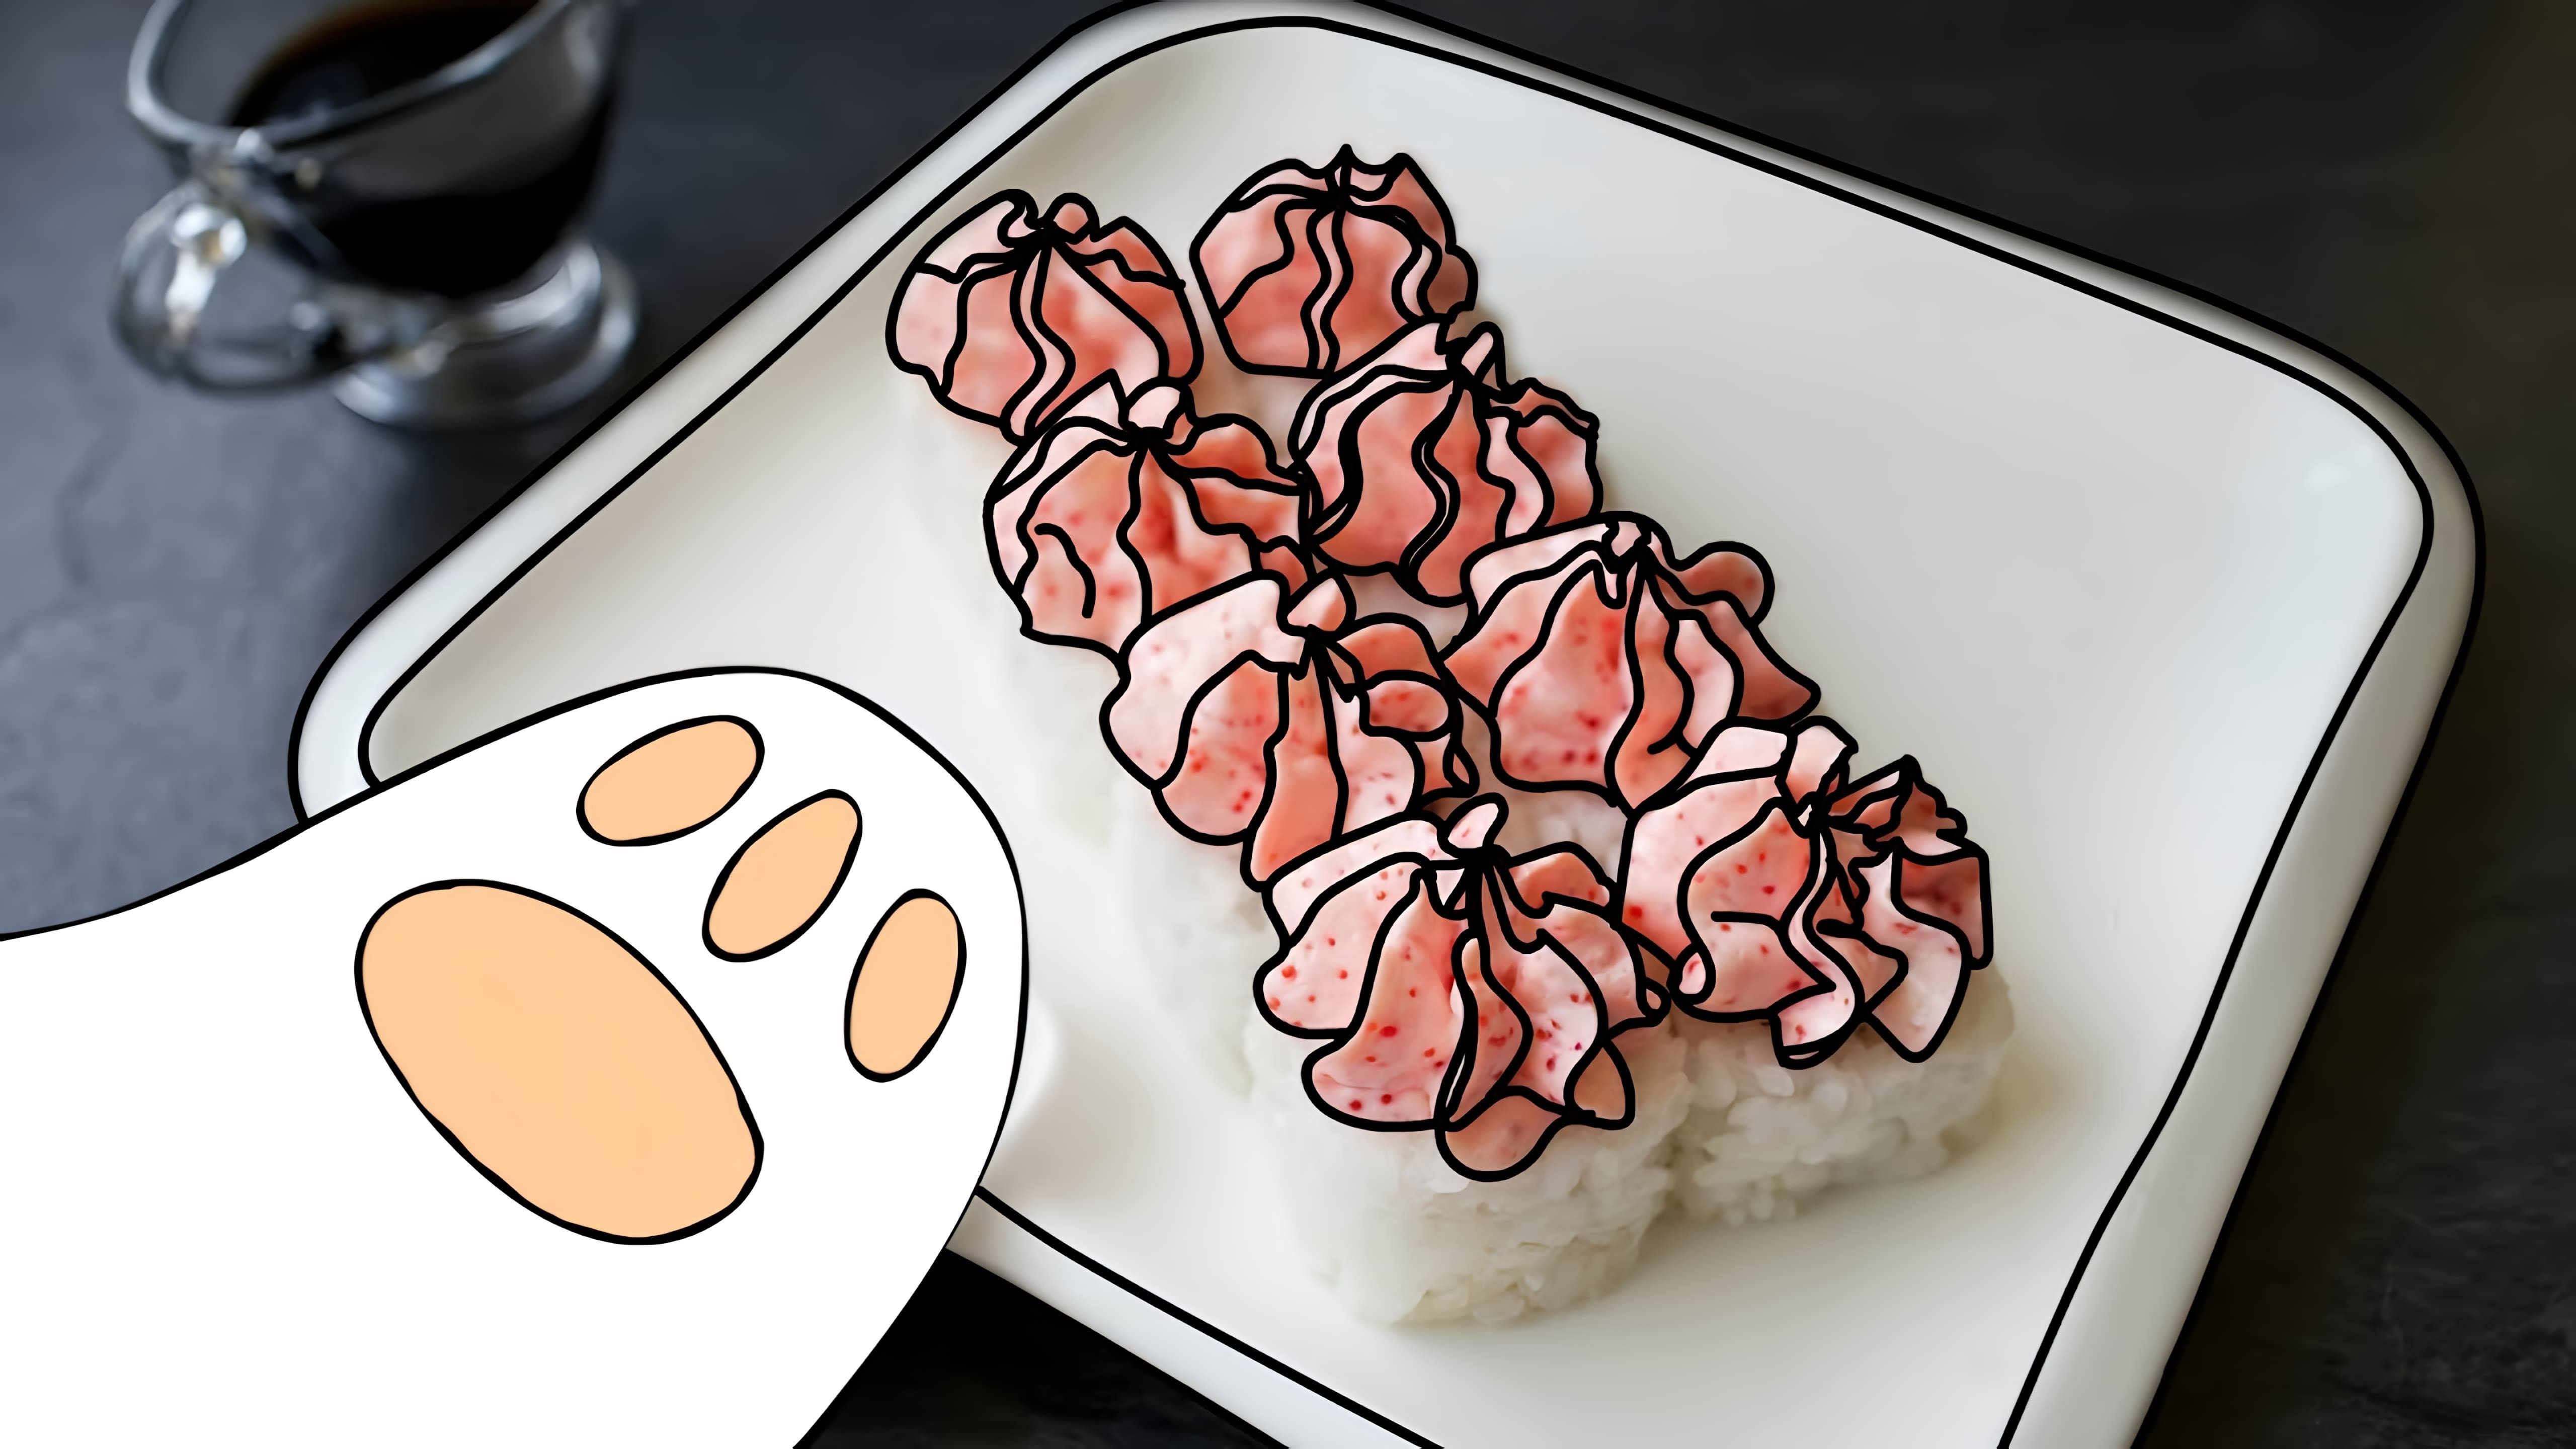 В этом видео демонстрируется рецепт соуса "Лава" для суши